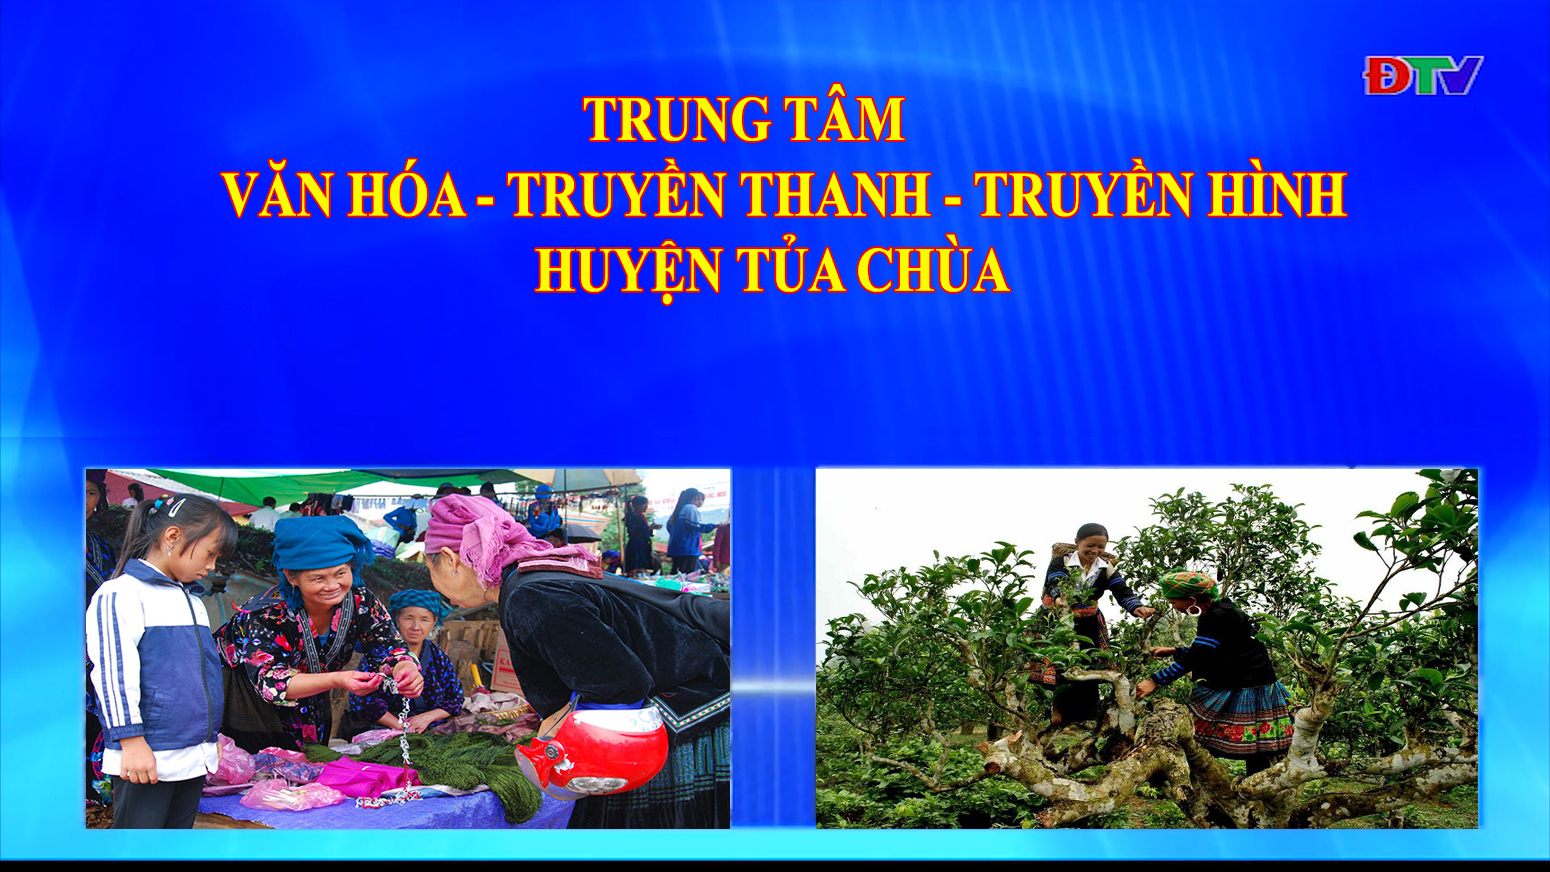 Trung tâm Văn hóa Truyền thanh Truyền hình huyện Tủa Chùa (Ngày 15-5-2020)